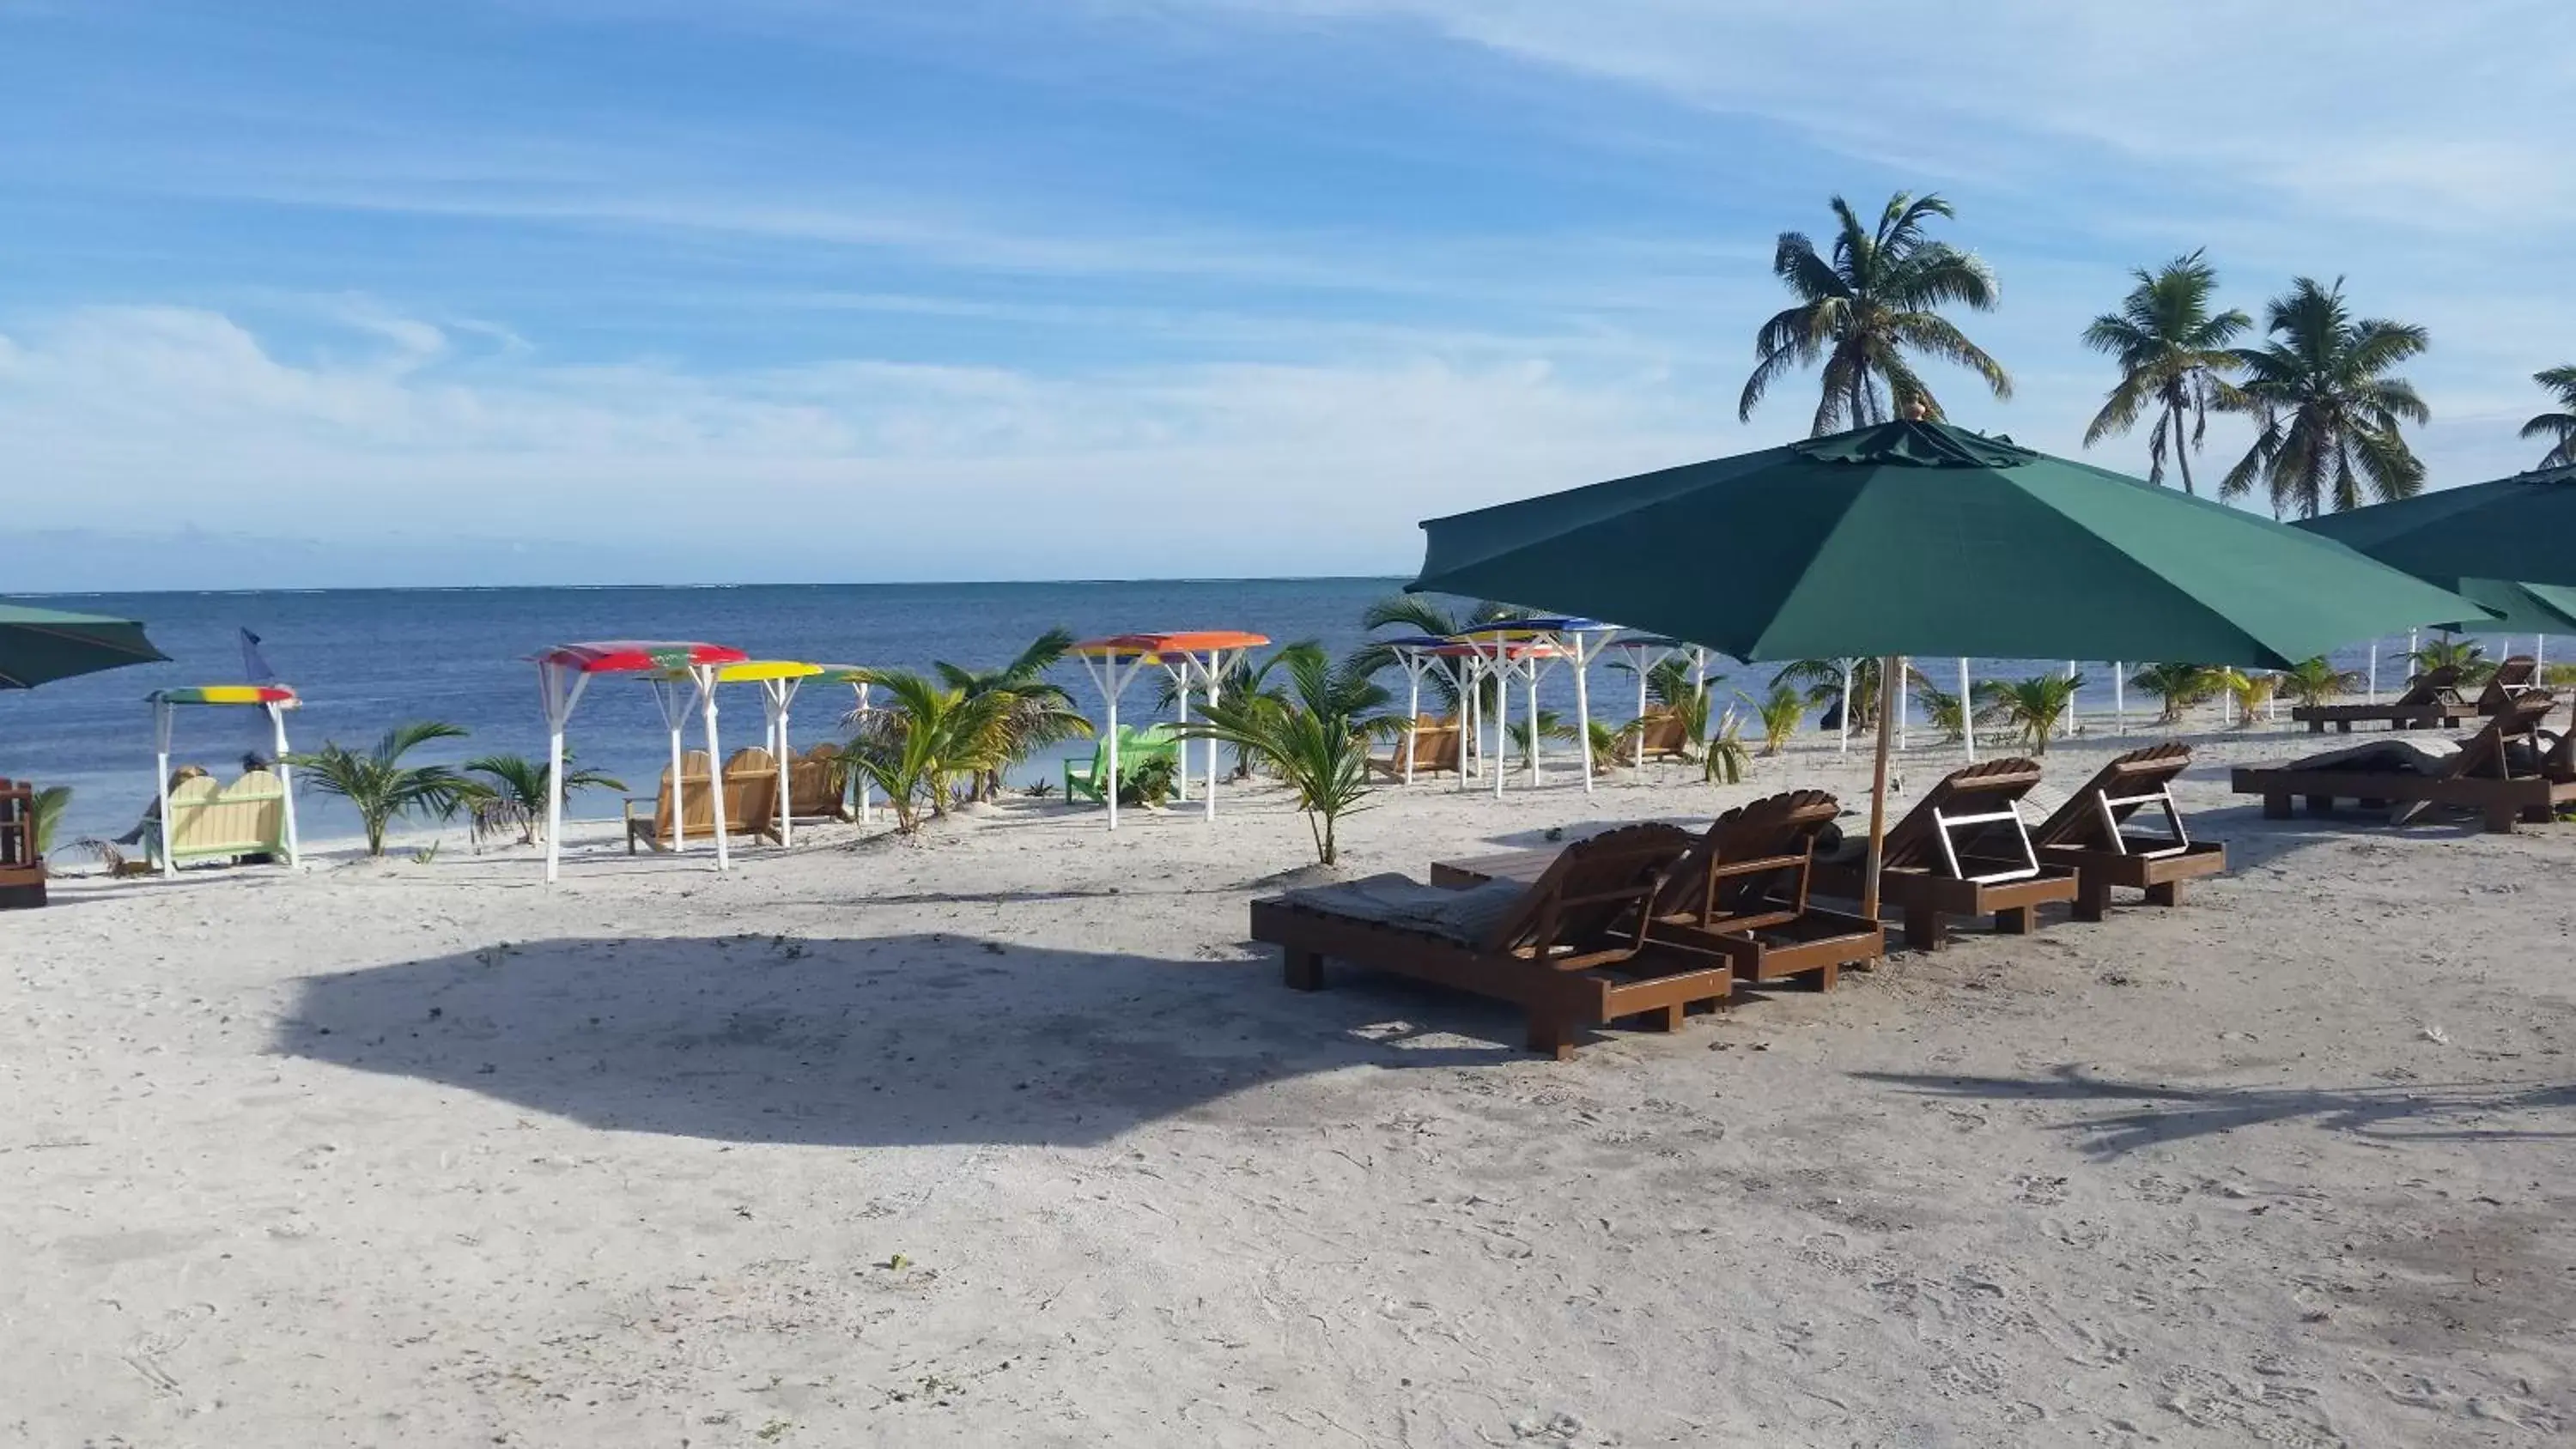 Off site, Beach in Royal Caribbean Resort